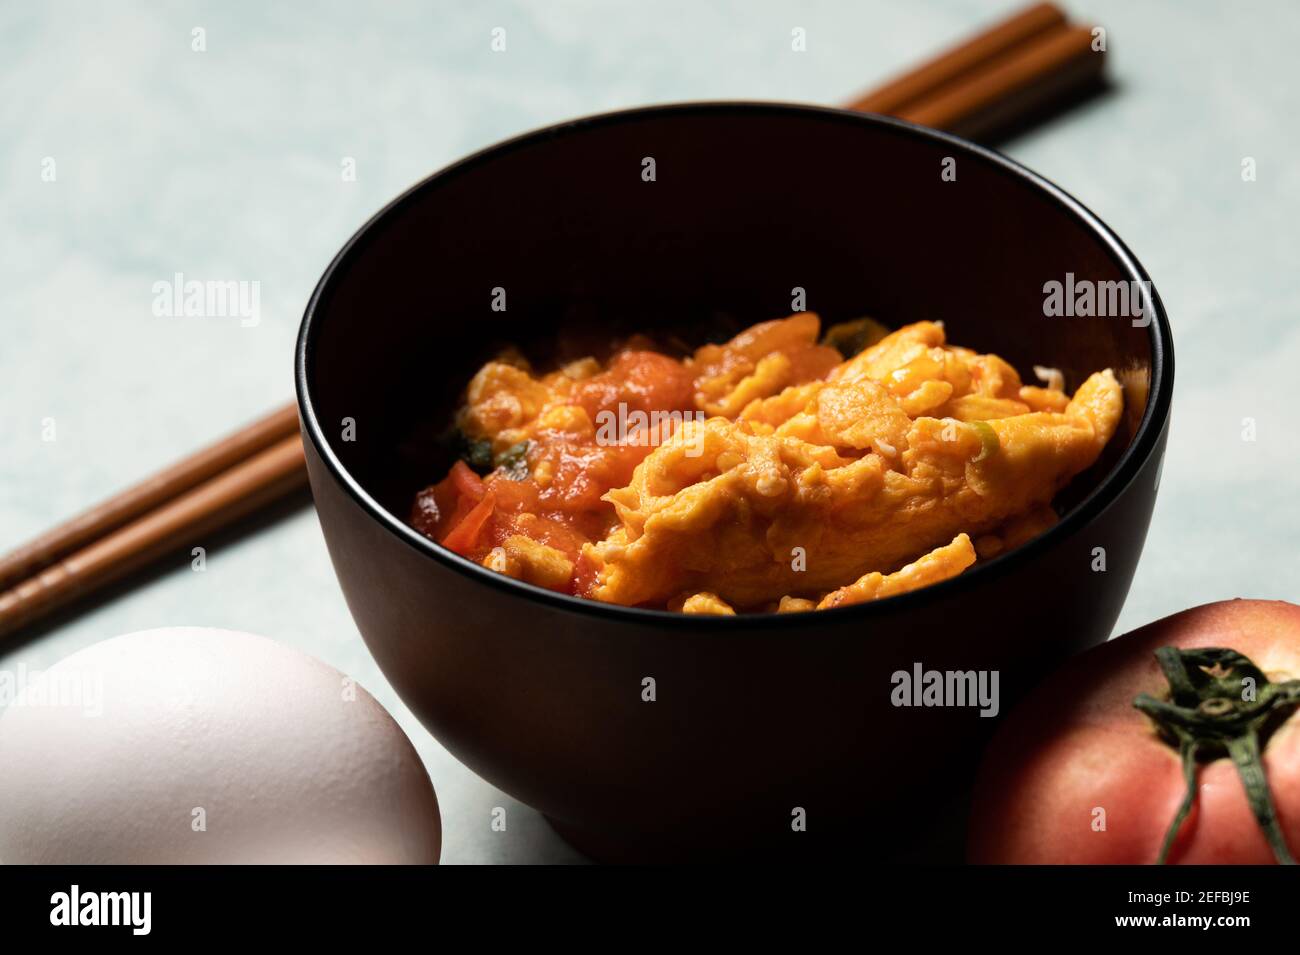 Les œufs brouillés aux tomates sont un repas maison Taïwan, Chine et d'autres régions de l'Asie de l'est. Œufs brouillés avec des tomates bouillies, à base avec sauce tomate Banque D'Images